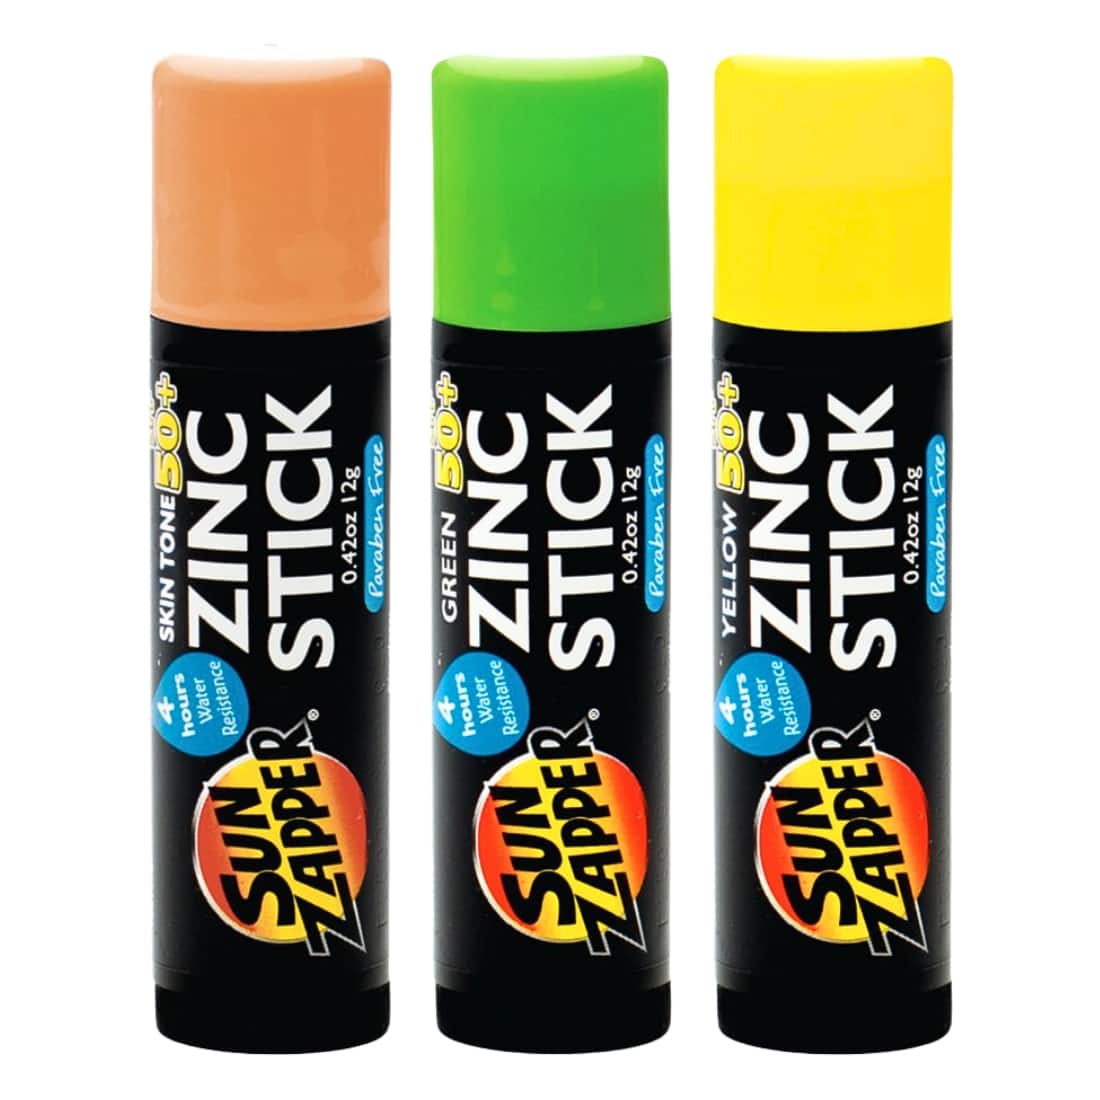 Sun Zapper Coloured Spf 50+ Zinc Stick 3 Pack - Skin/Green/Yellow - Sunscreen by Sun Zapper 3x12g